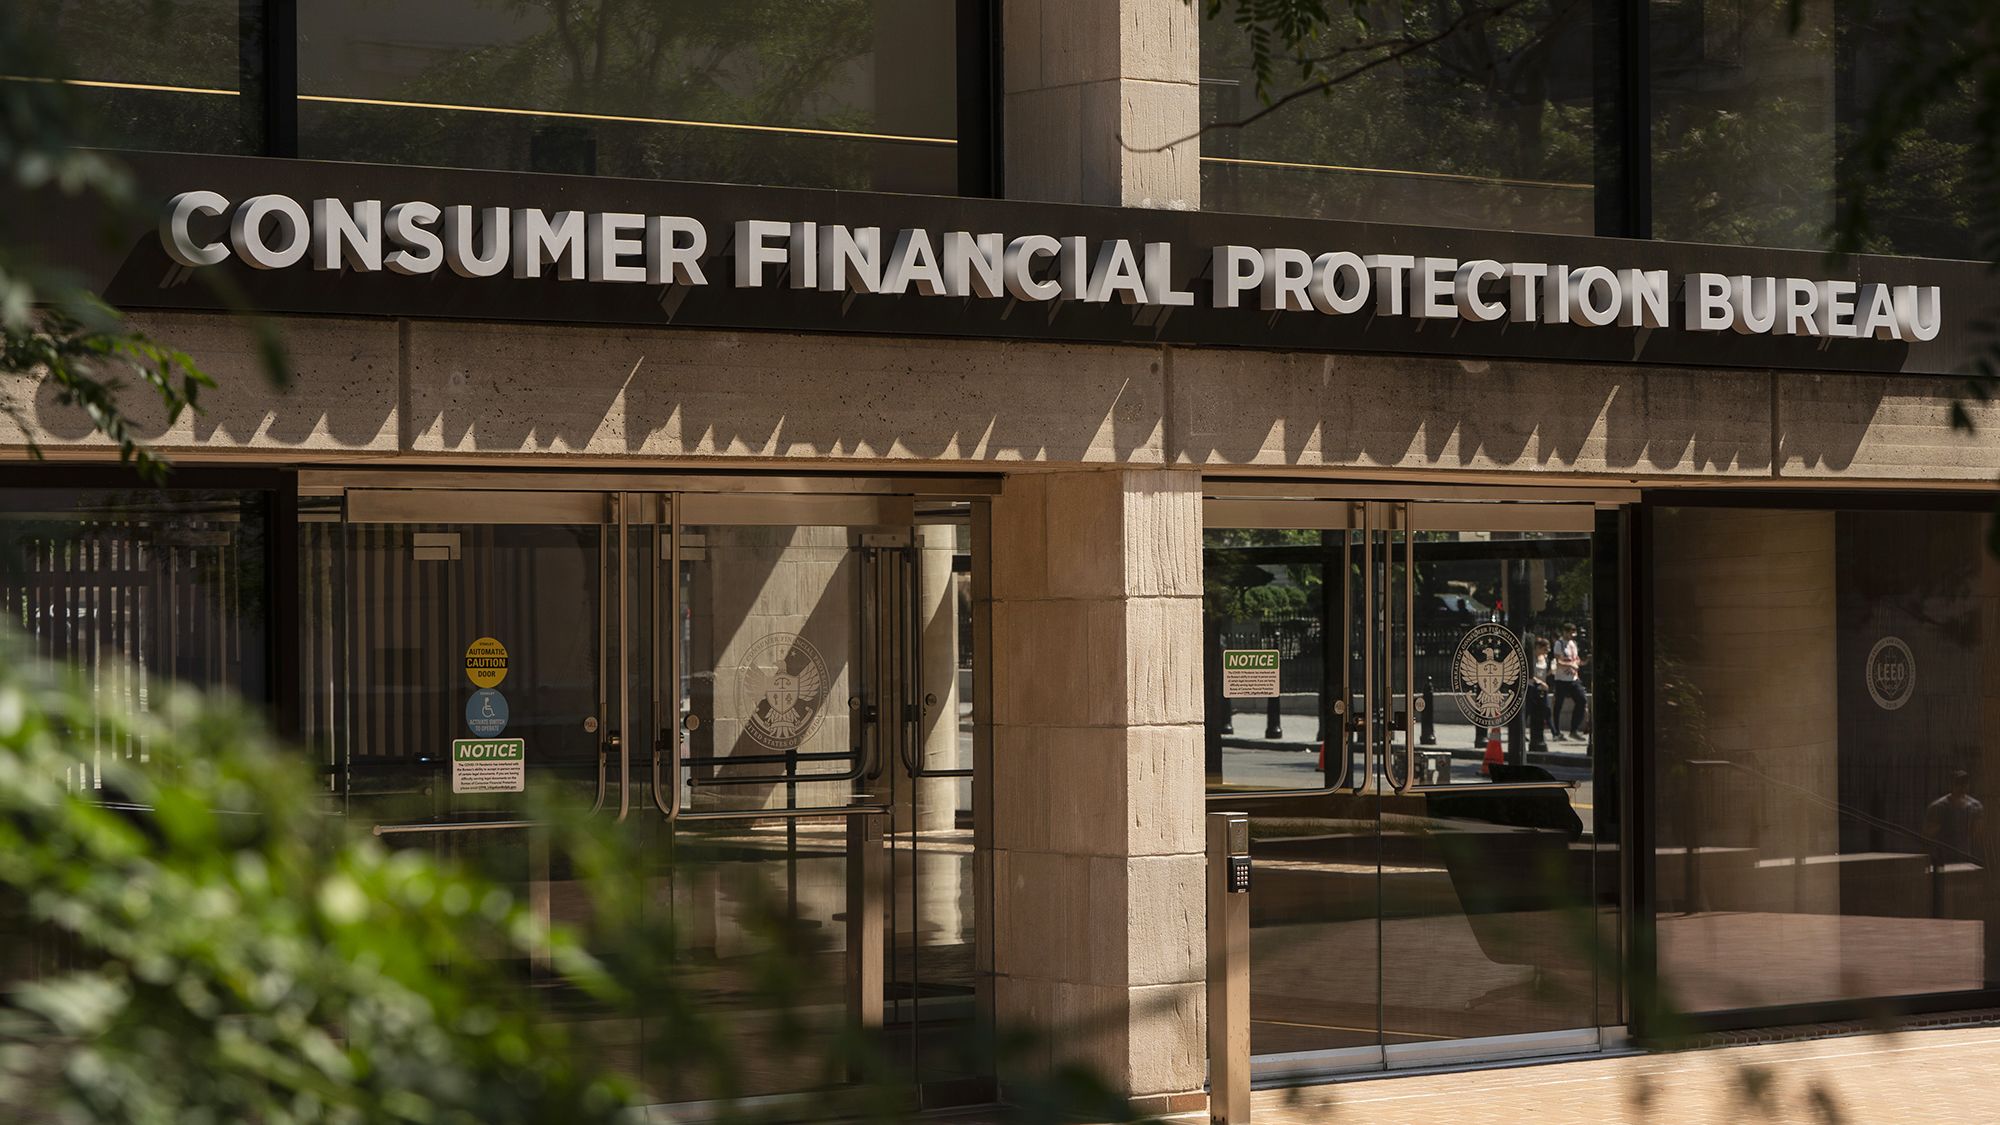 Consumer Financial Protection Bureau Office Photos